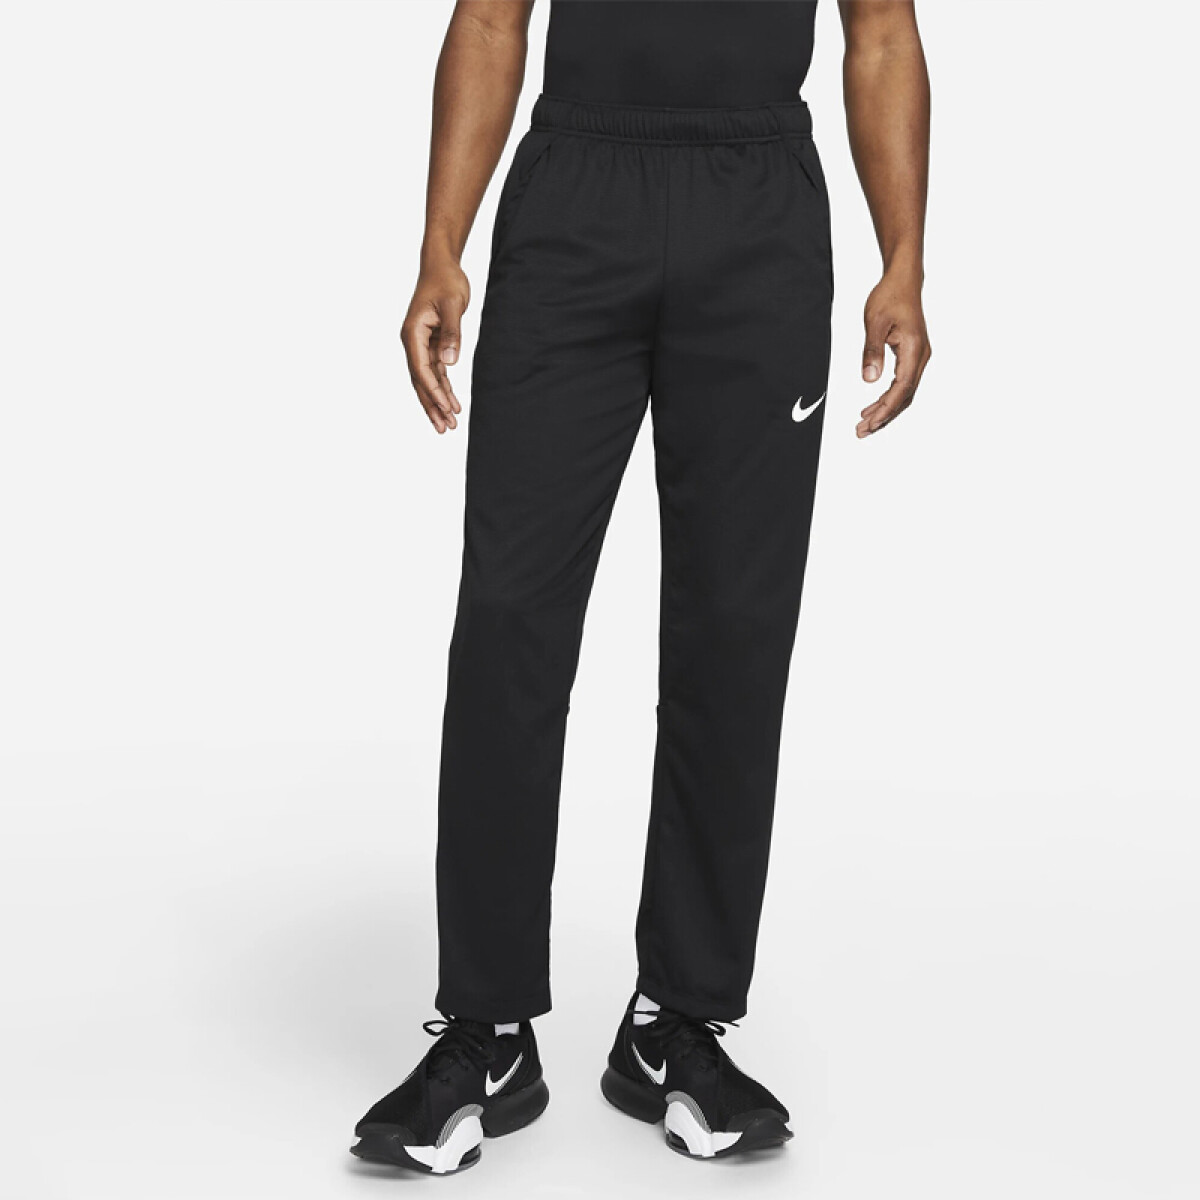 Pantalon Nike Training Hombre Df Epic Knit Black/Black - S/C 